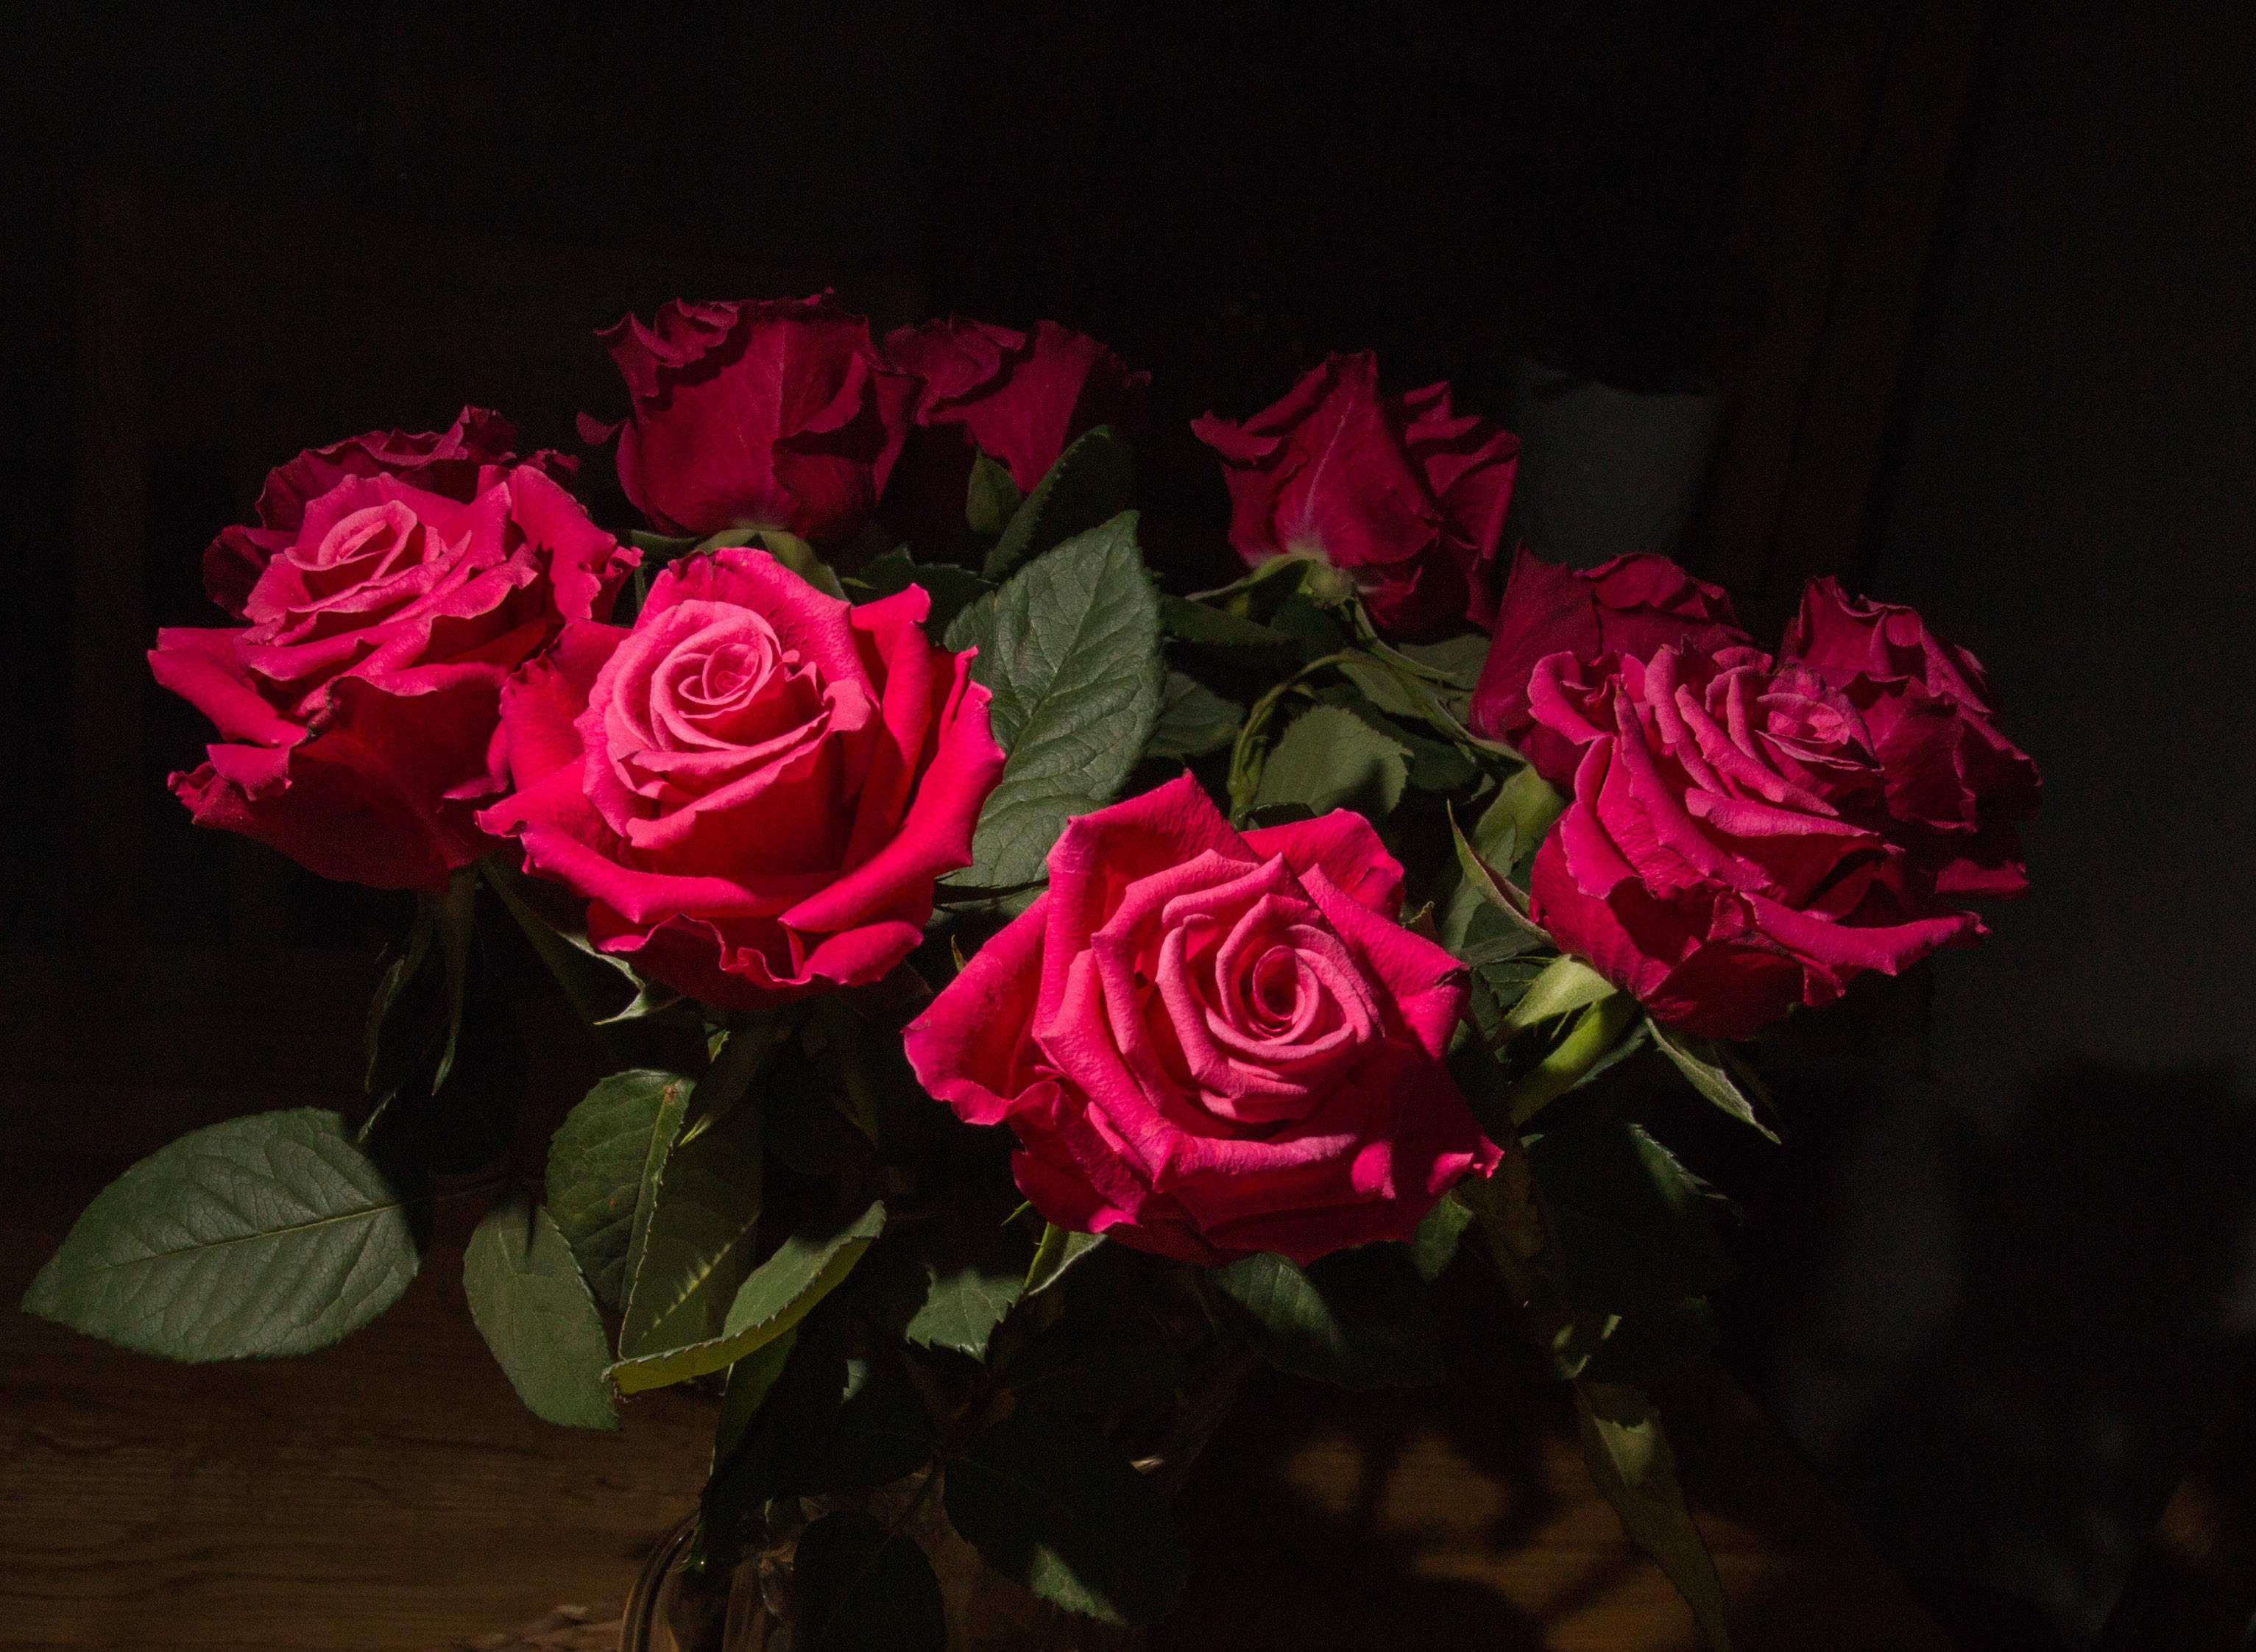 Скачать обои бесплатно Природа, Цветок, Роза, Сделано Человеком, Розовый Цветок картинка на рабочий стол ПК